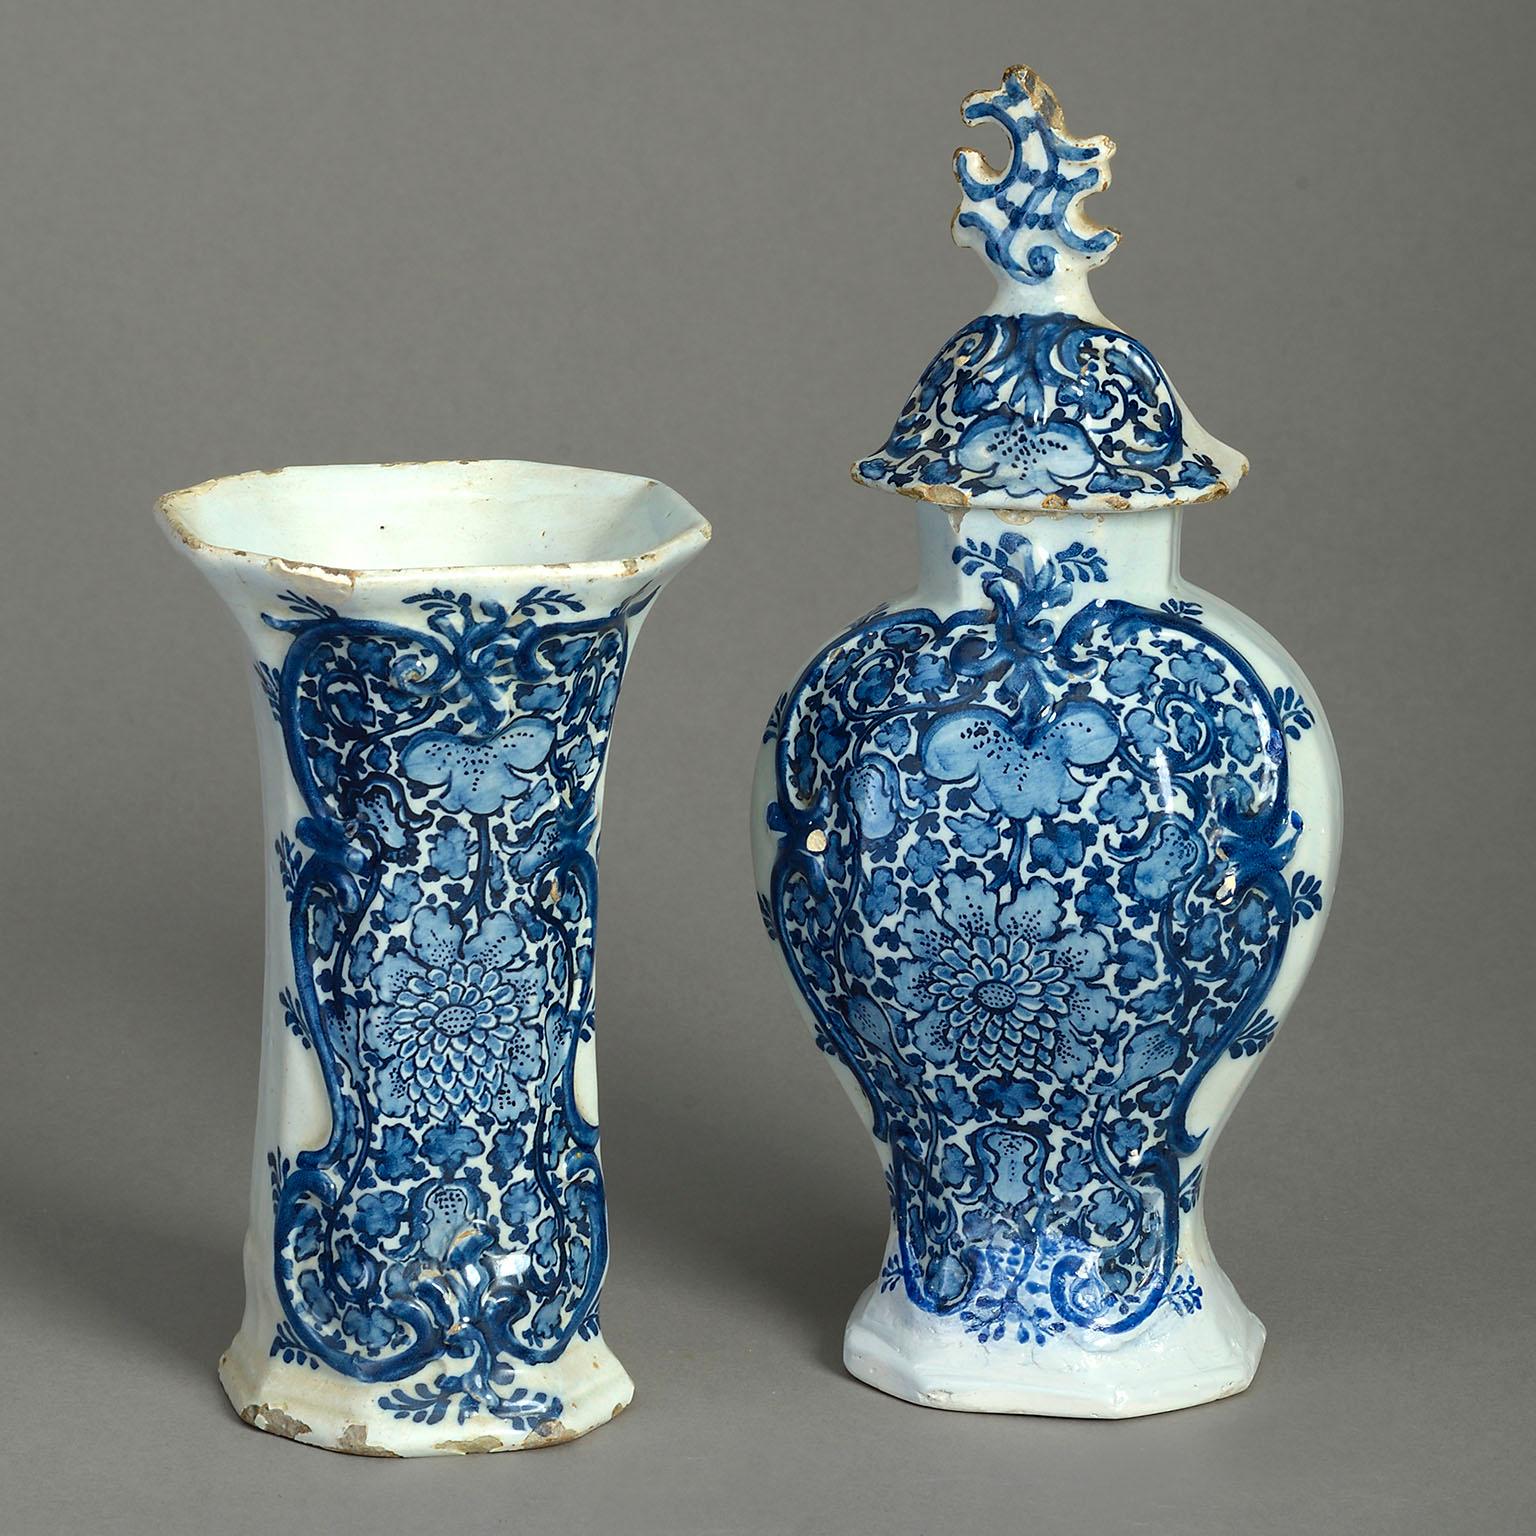 Garniture de cinq vases en poterie de Delft à glaçure bleue et blanche, datant de la fin du XVIIIe siècle. Les couvercles sont ornés de fleurons à volutes, les corps sont en forme de balustre et de trompette, décorés de motifs floraux et feuillus